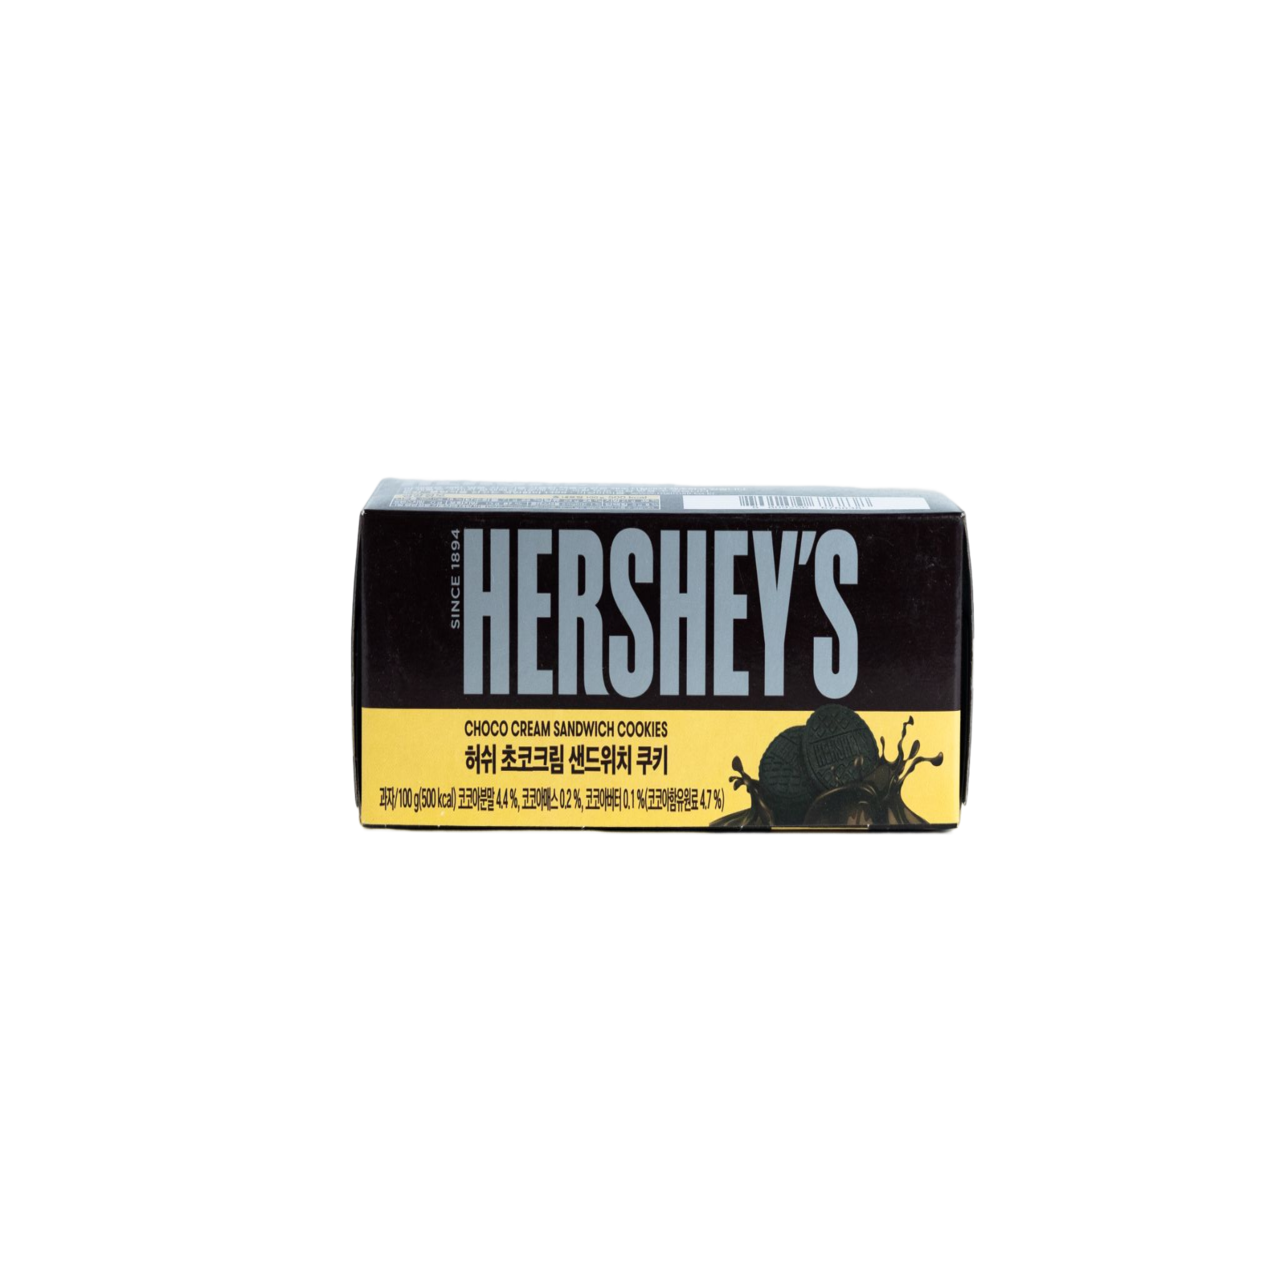 Hershey’s choco cream cookies